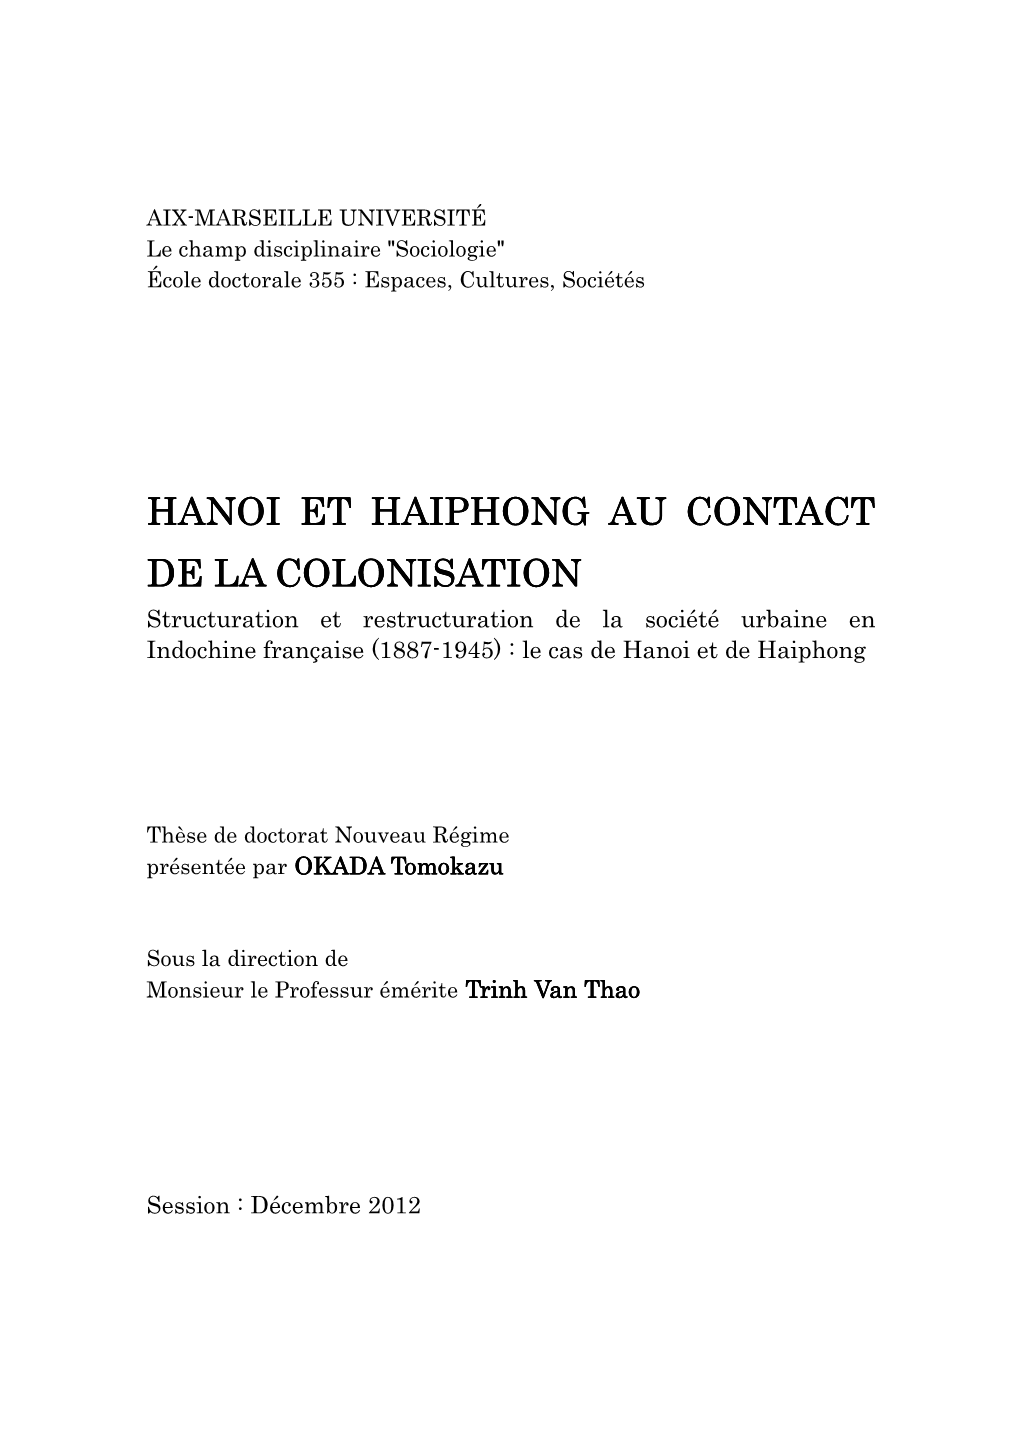 Hanoi Et Haiphong Au Contact De La Colonisation D